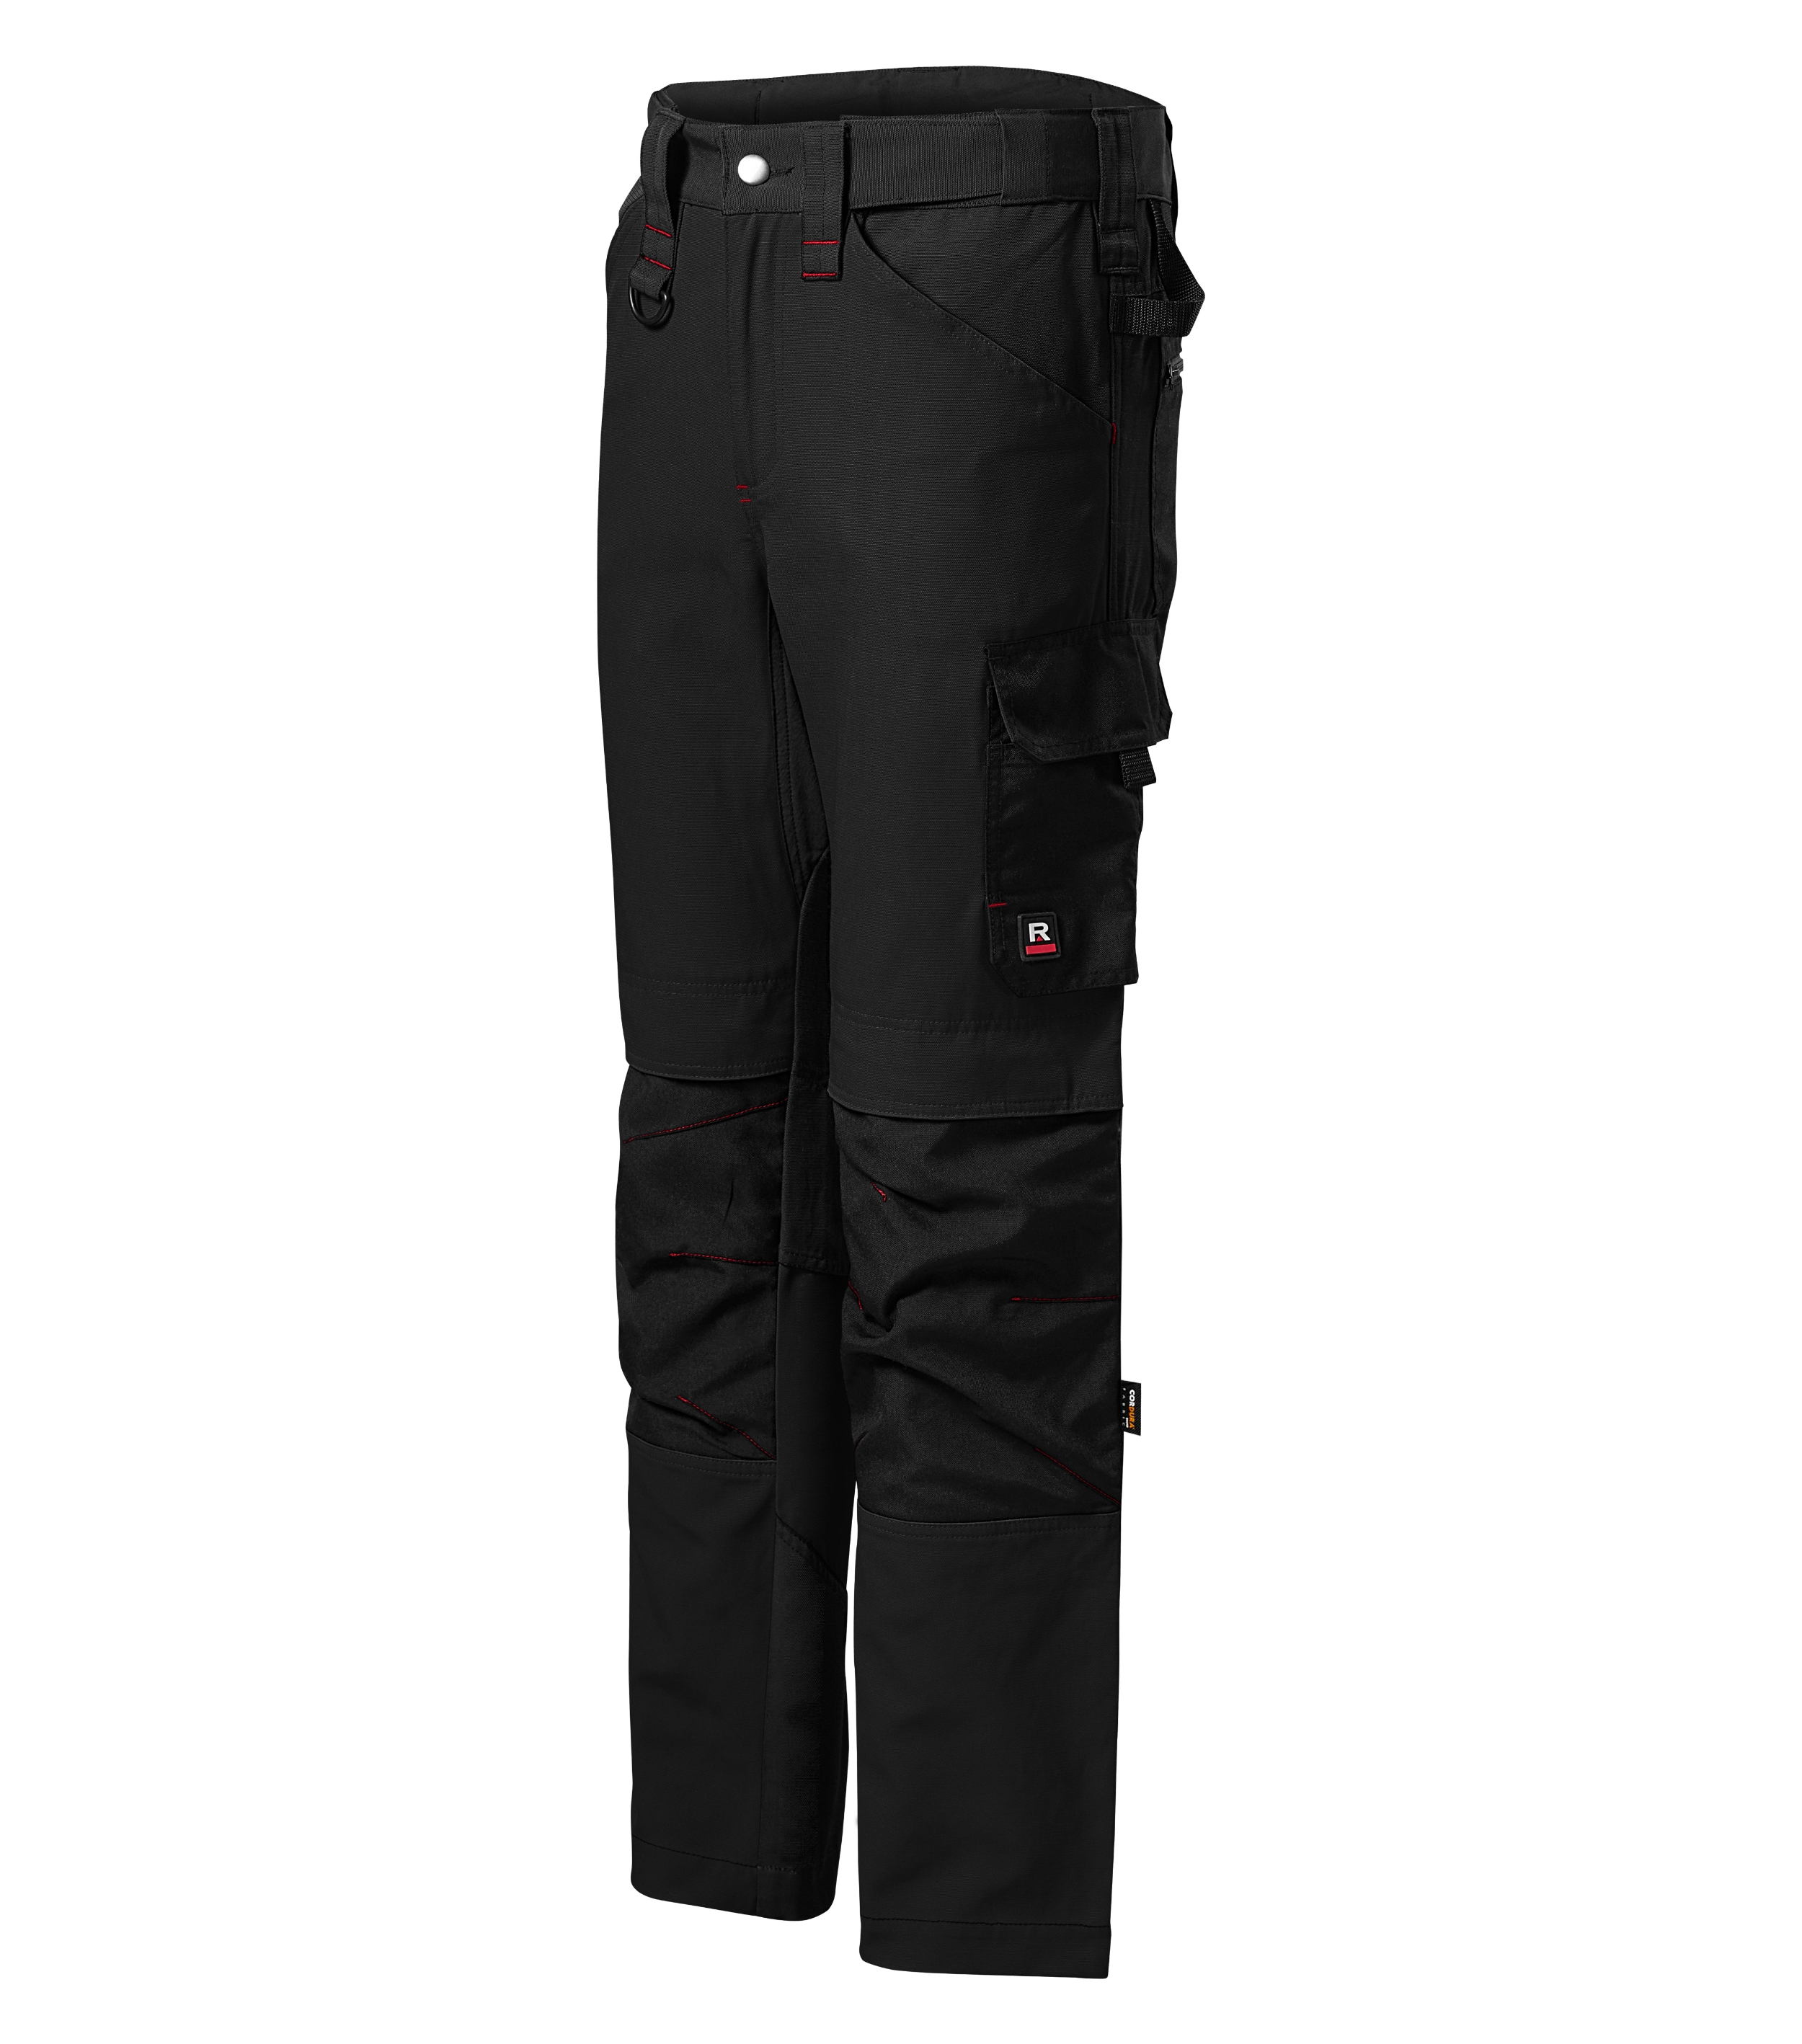 Arbeitshose Männer - VERTEX W07 - 10 multifunktionale Taschen, schmutzabweisende Ausrüstung und Kniepolstertaschen - Arbeitskleidung Herren auch als Gertenhose Herren 